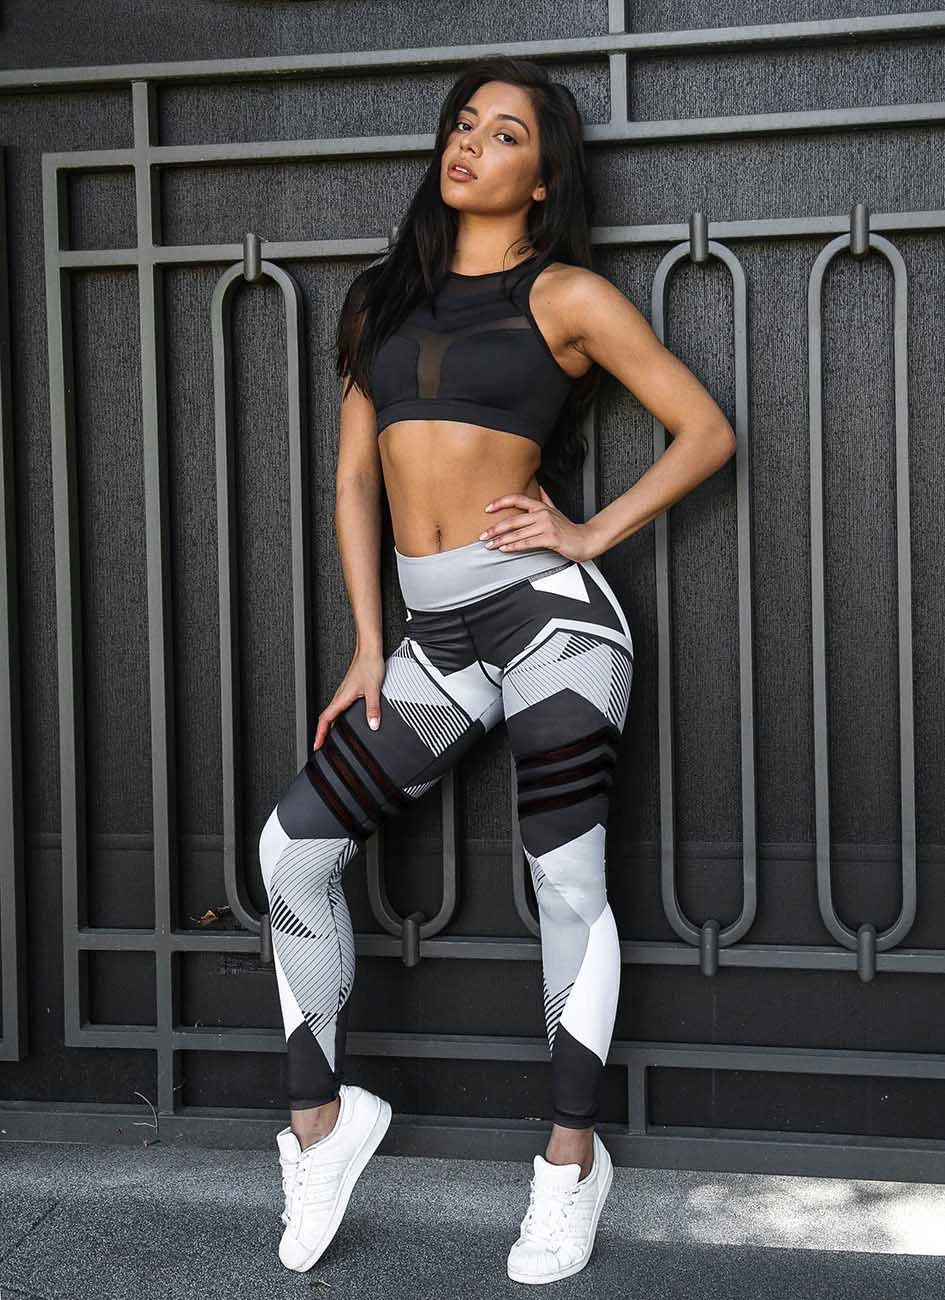 New Mesh Pattern Print Fitness Leggings for Women Sporting Workout Leggins Trousers Slim Black White Pant